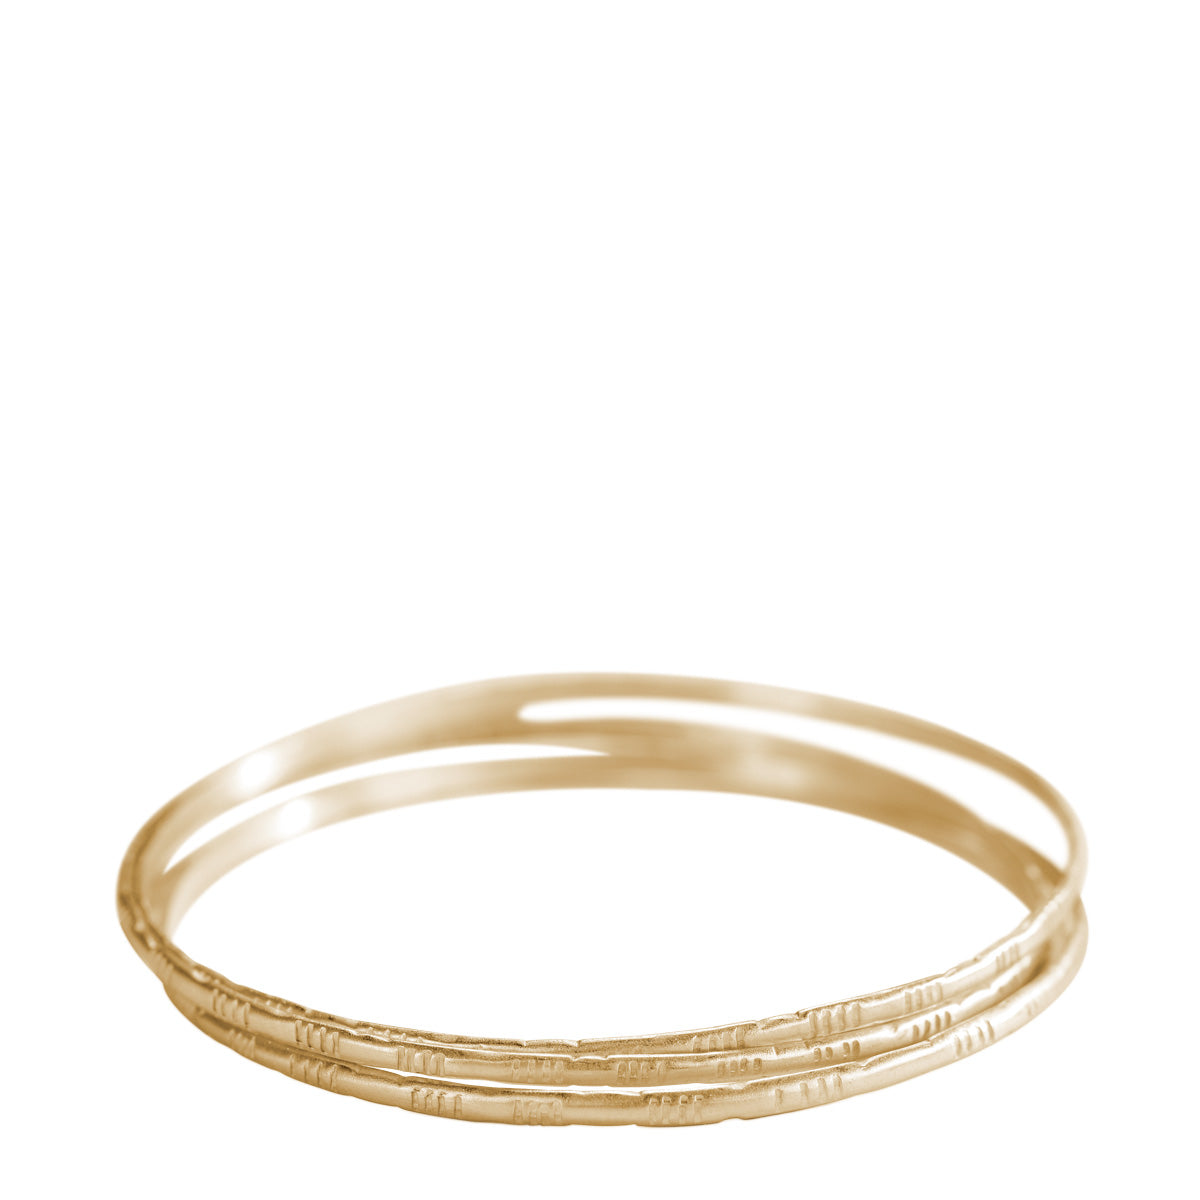 Ritastephens 10k Solid Yellow Gold Shiny Hinged Bangle Bracelet 5mm :  Clothing, Shoes & Jewelry - Amazon.com